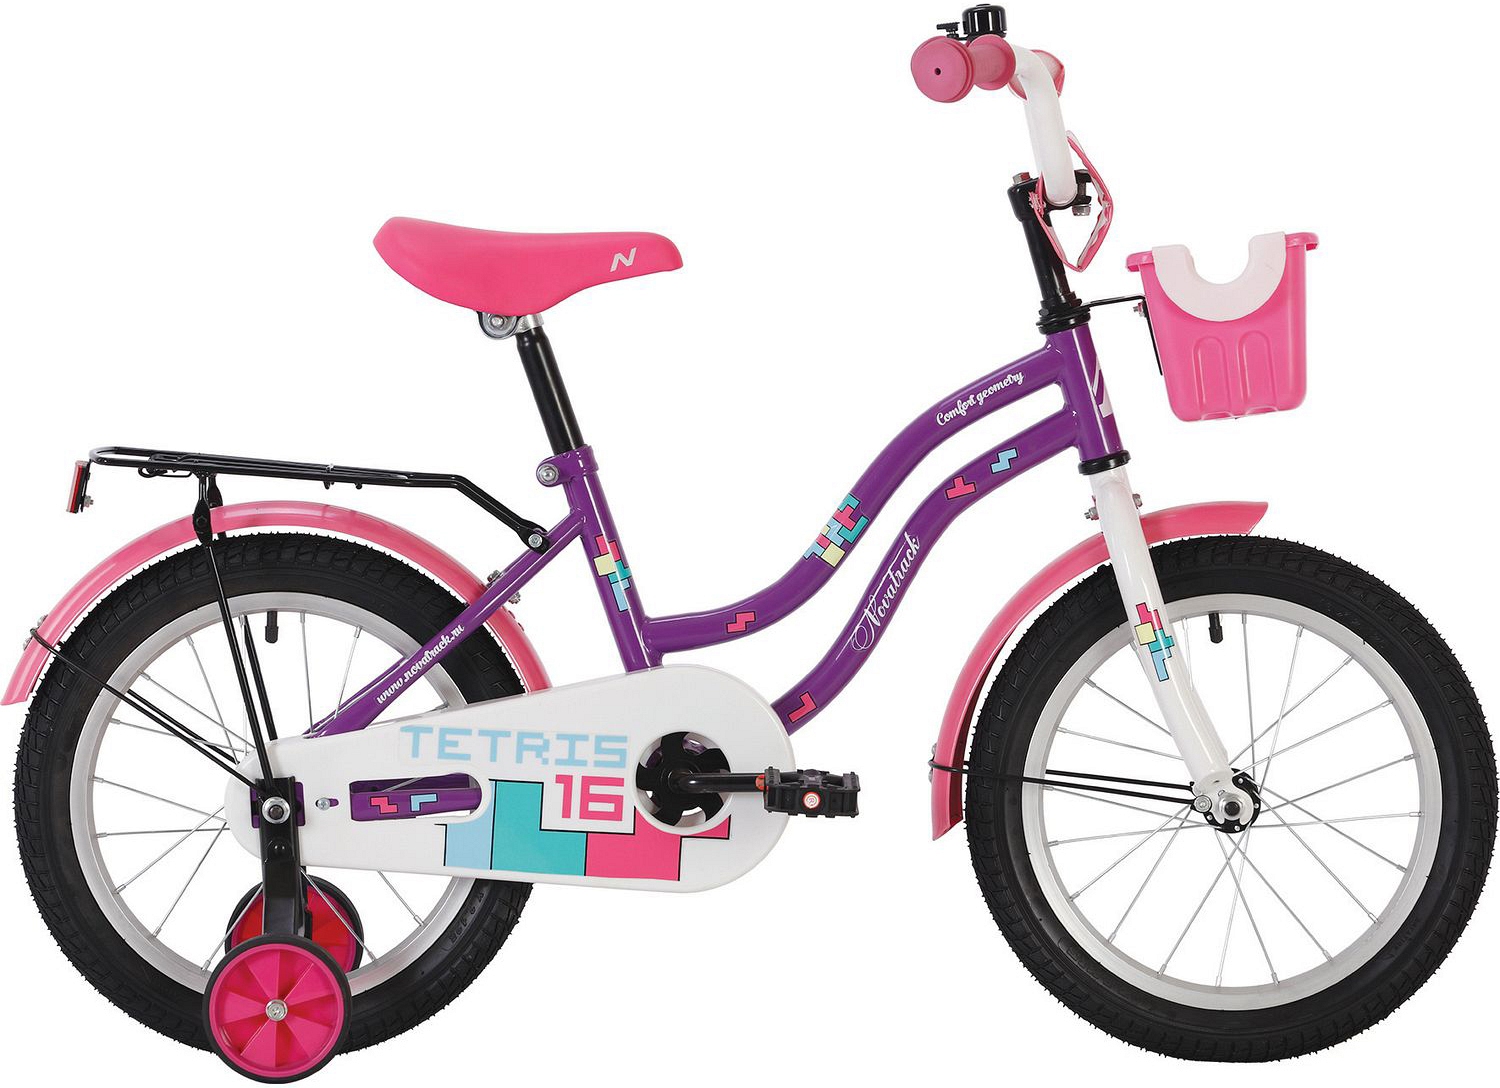  Отзывы о Детском велосипеде Novatrack Tetris 12 2020